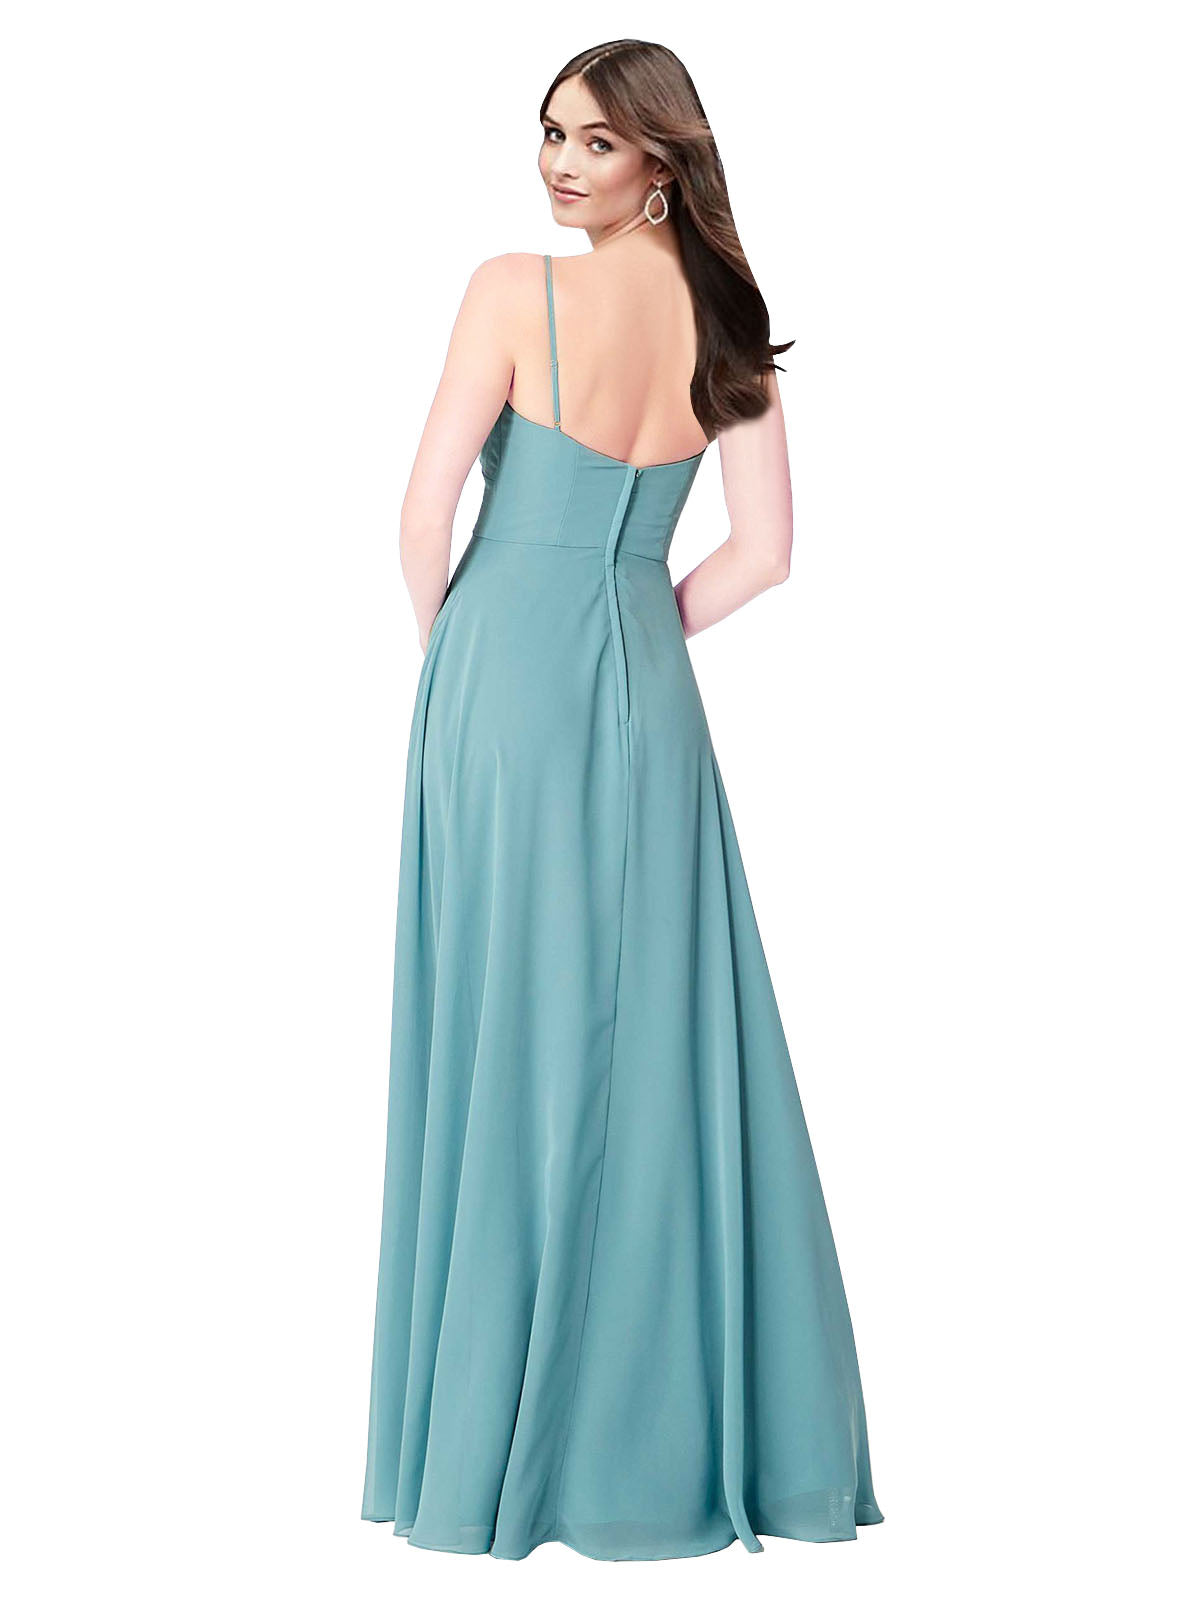 Turquoise A-Line V-Neck Sleeveless Long Bridesmaid Dress Kelani